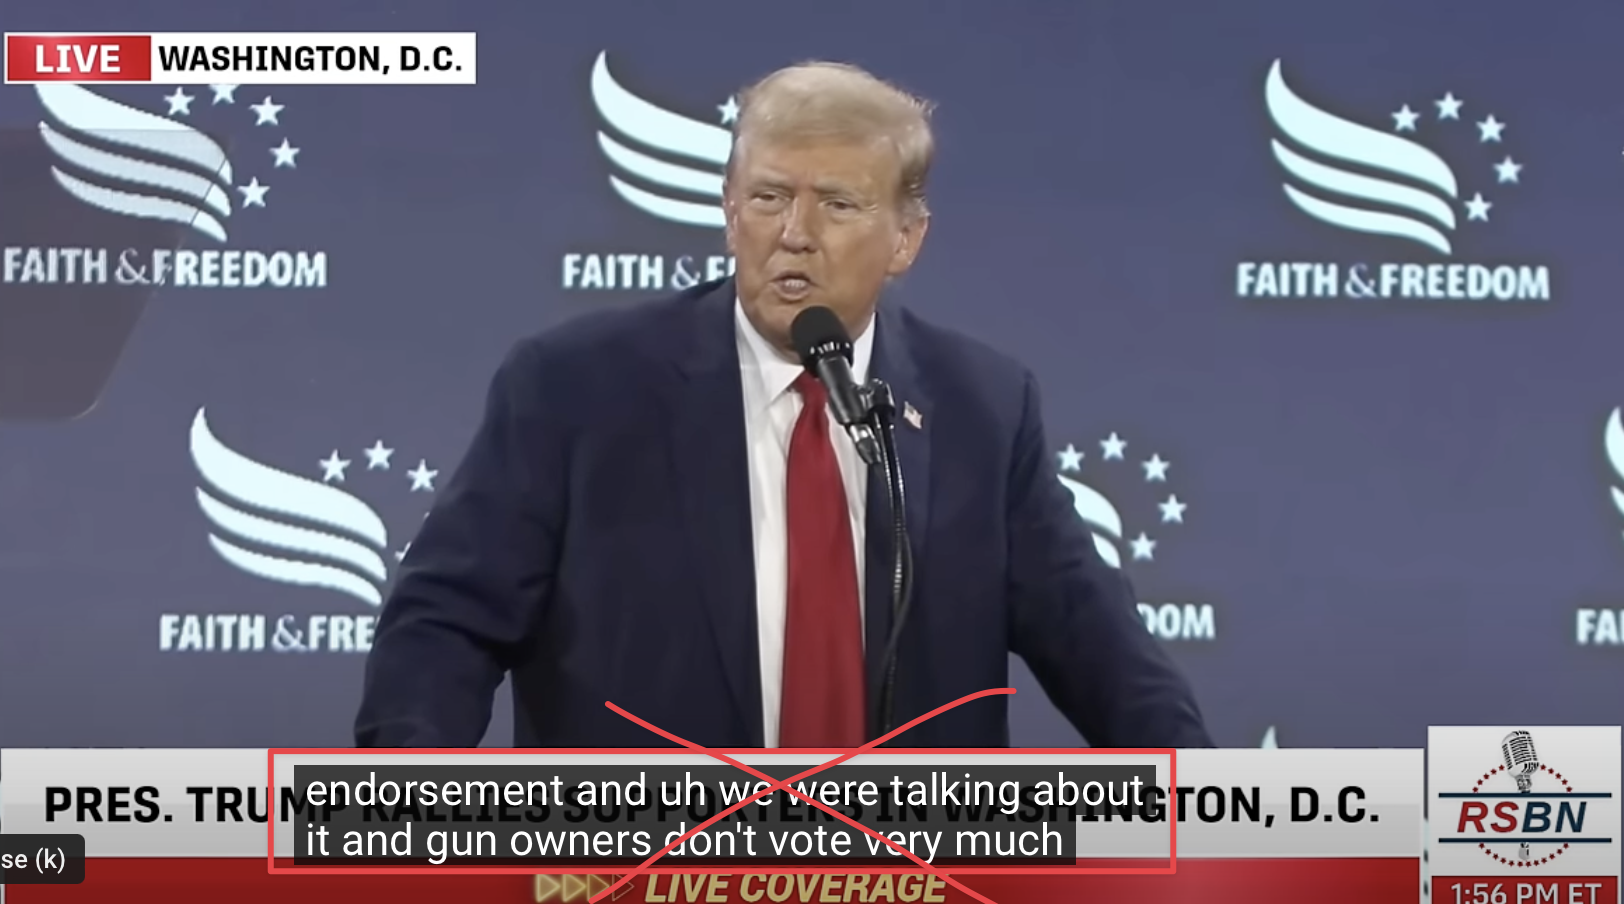 Donald Trump lies about gun owners voting participation